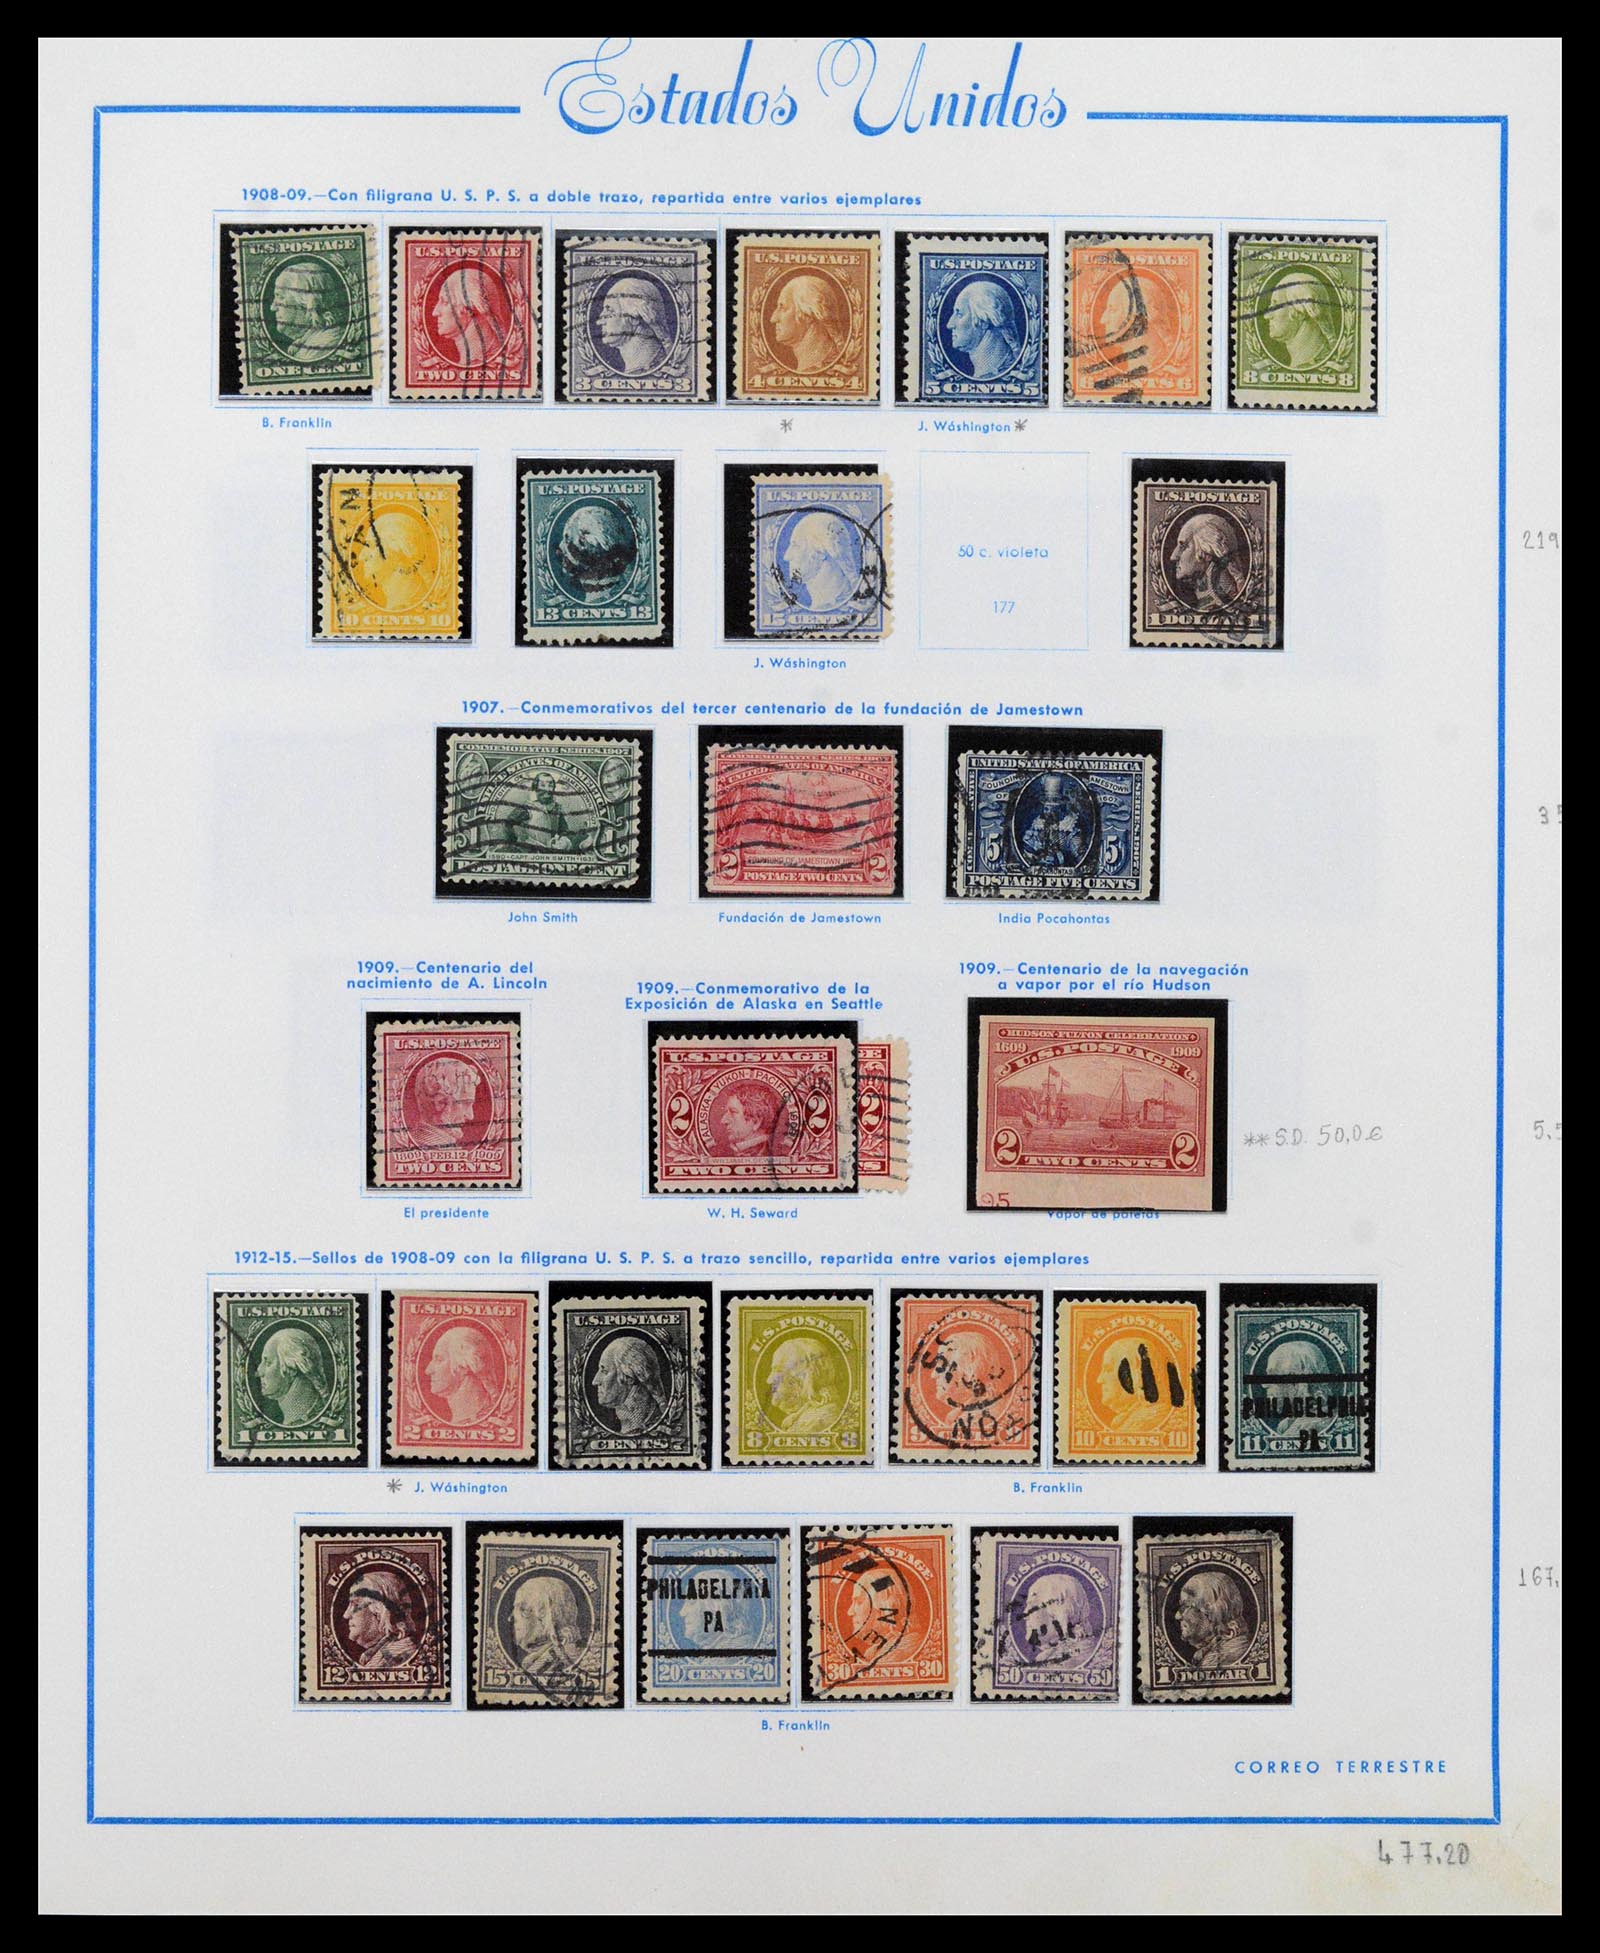 39190 0011 - Stamp collection 39190 USA 1851-1975.